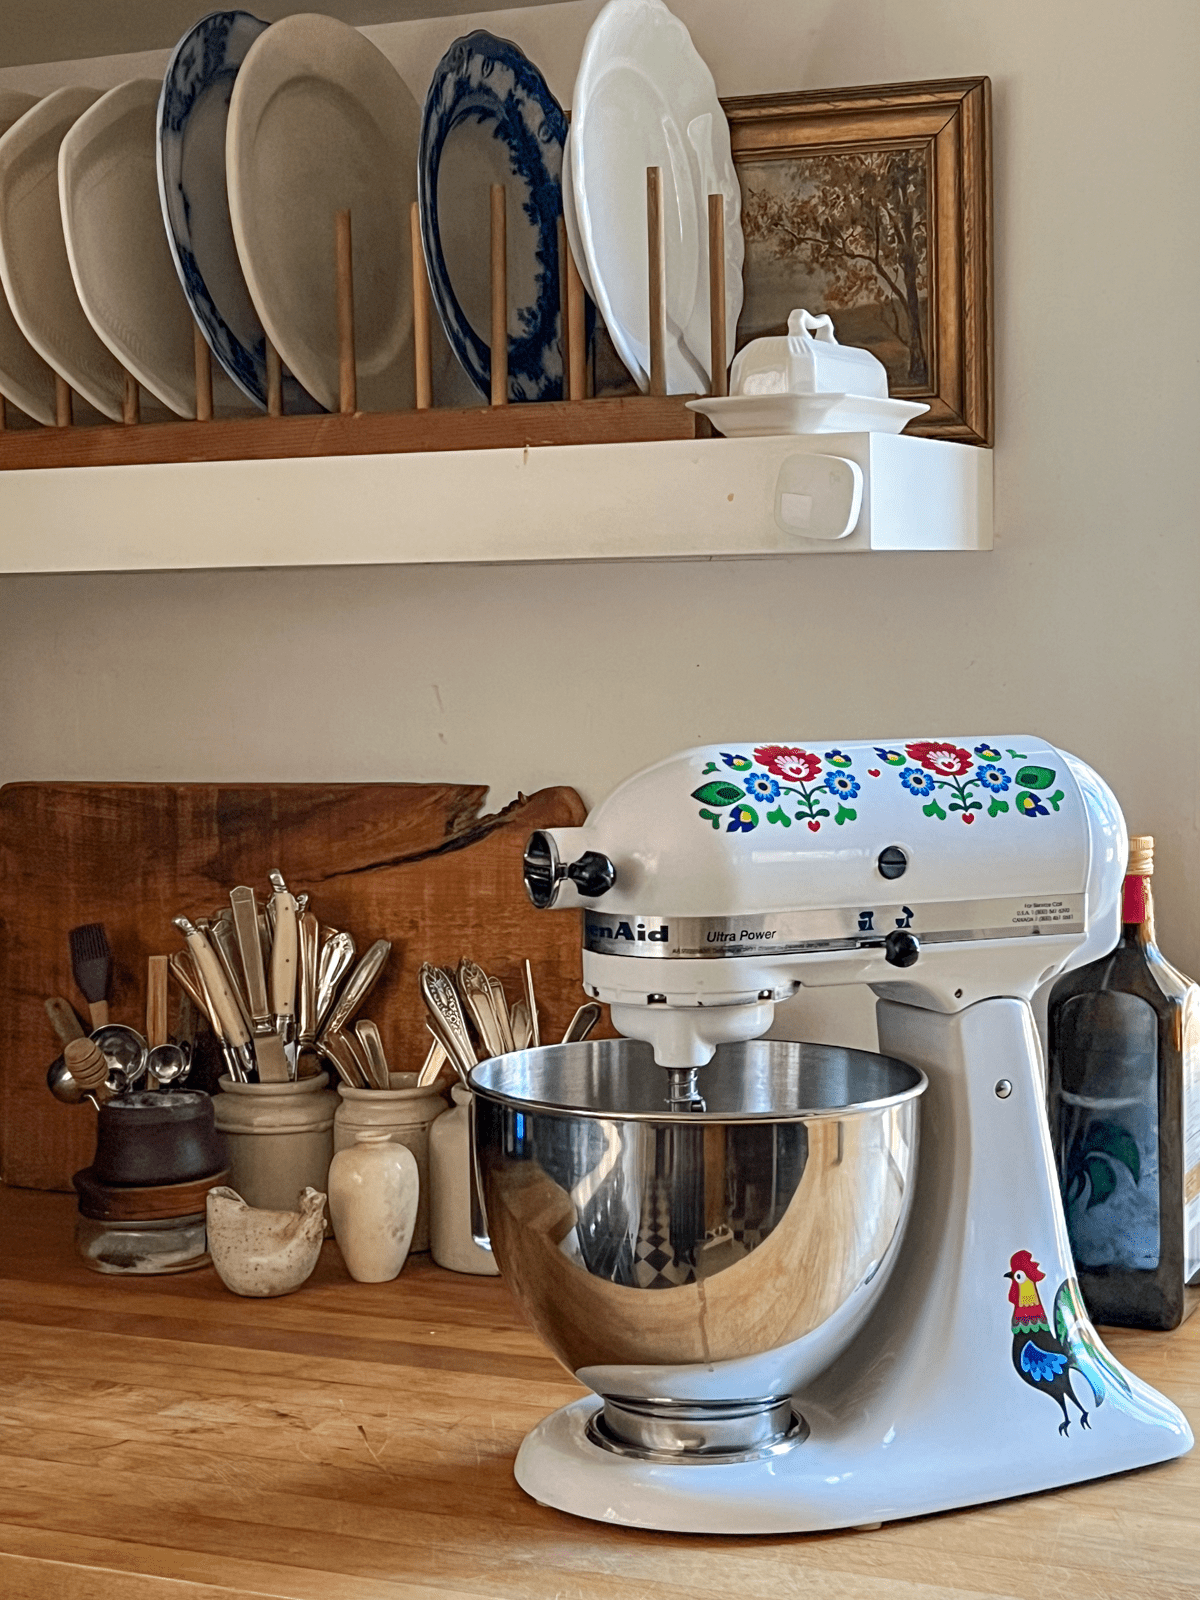 White Kitchen Aid in country kitchen with folk art decals.